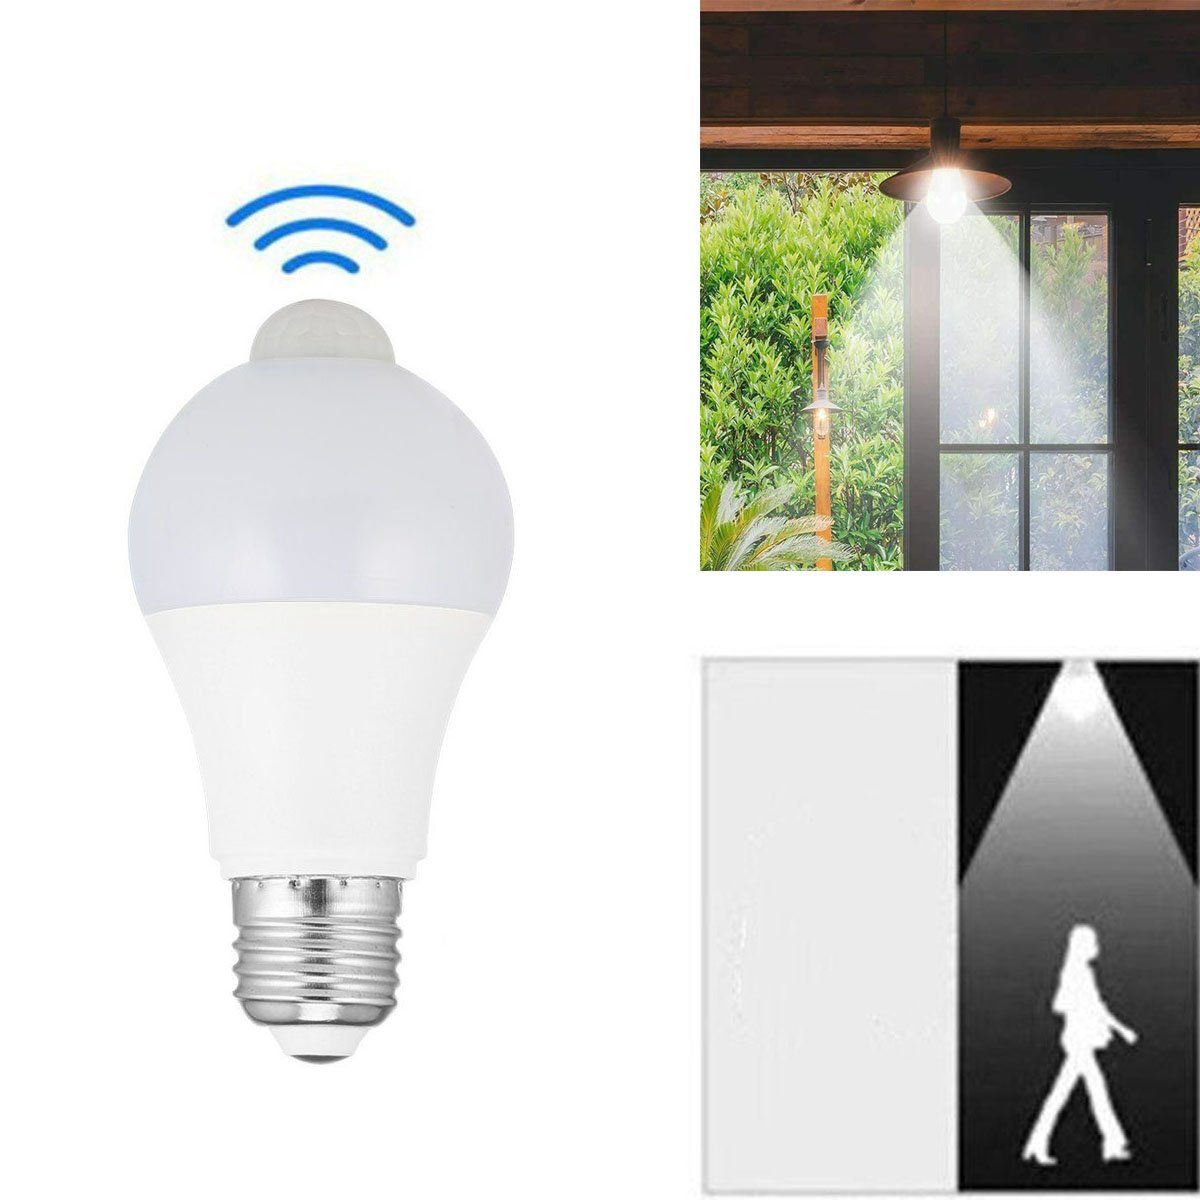 oyajia E27 LED Intelligente Lampe, 12W LED-Lampe mit Bewegungssensor Sensor Smarte Lampe, Automatische Glühbirne für Haustür Balkon Garage Treppen,1/2/4 Stück 1 Stück | Leuchtmittel